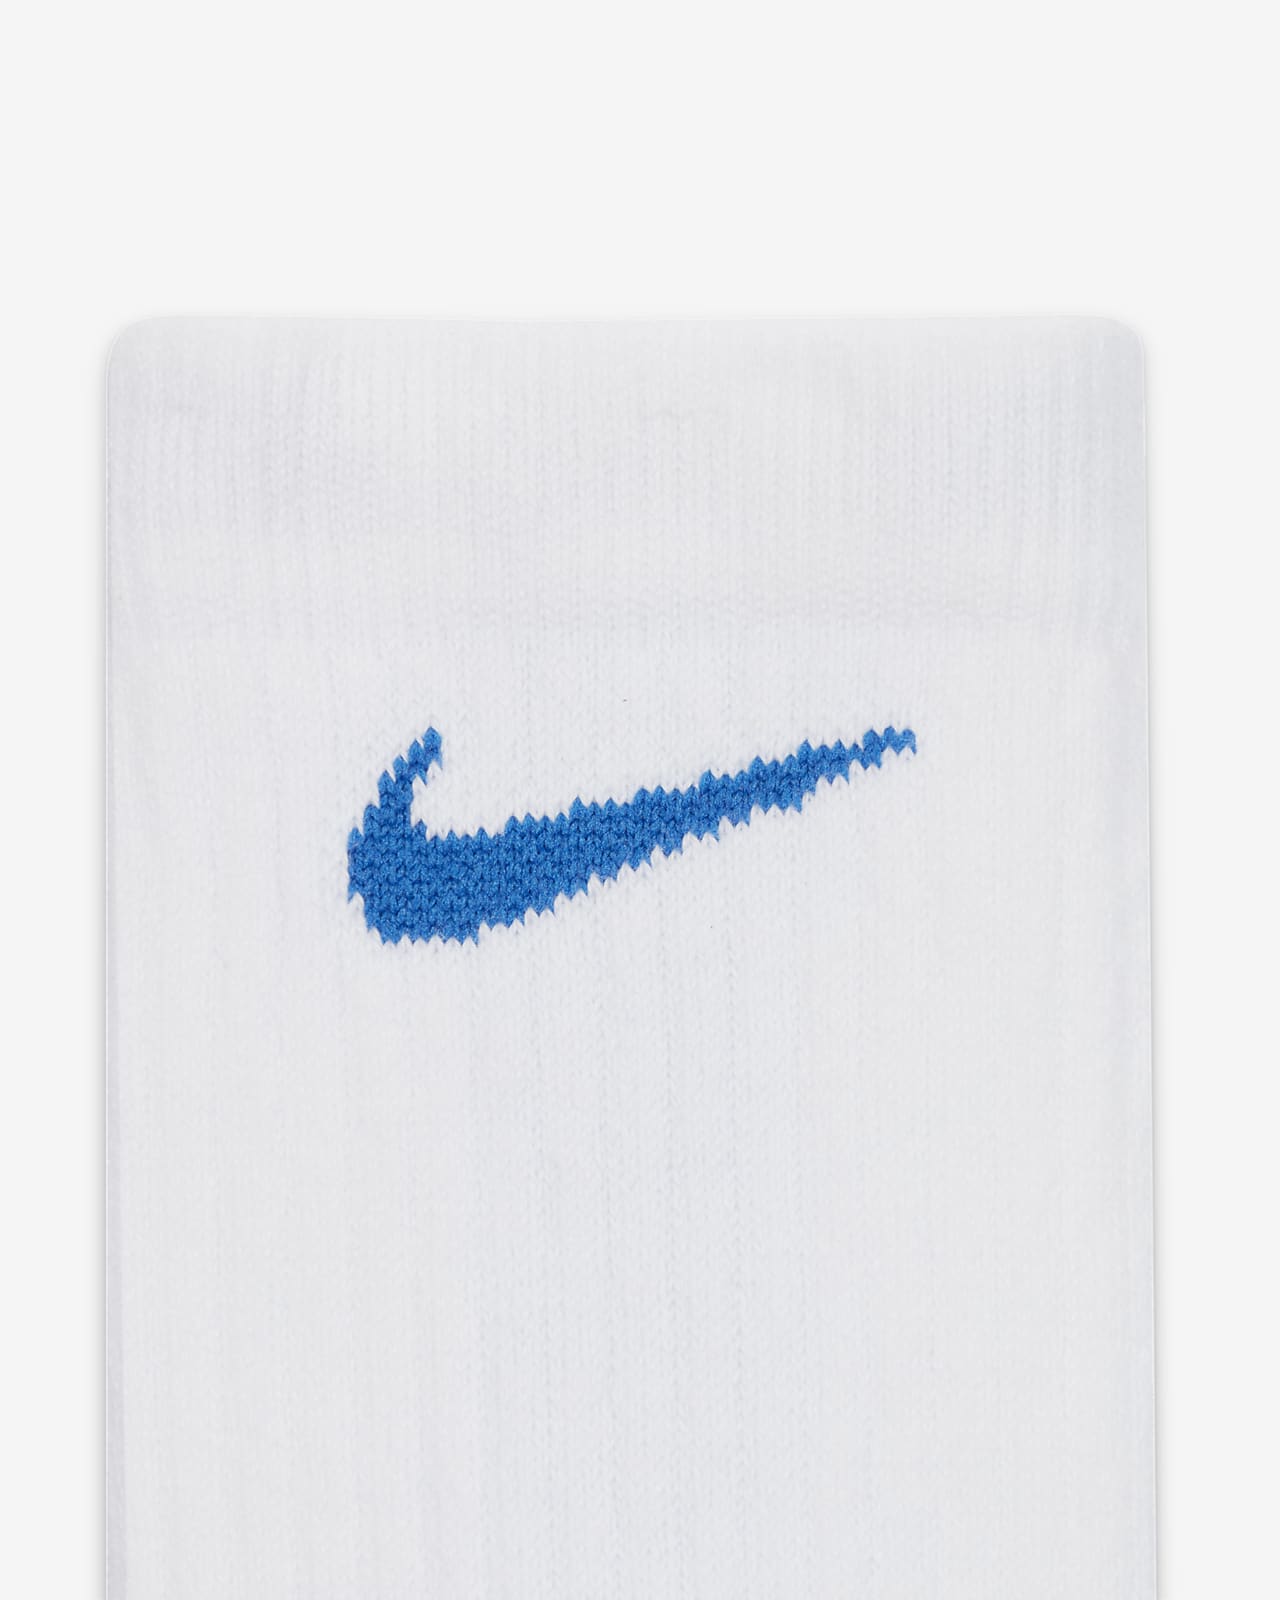 Nike Elite Versatility Crew Basketball Socks In Omega Blue/blk/omega Blue